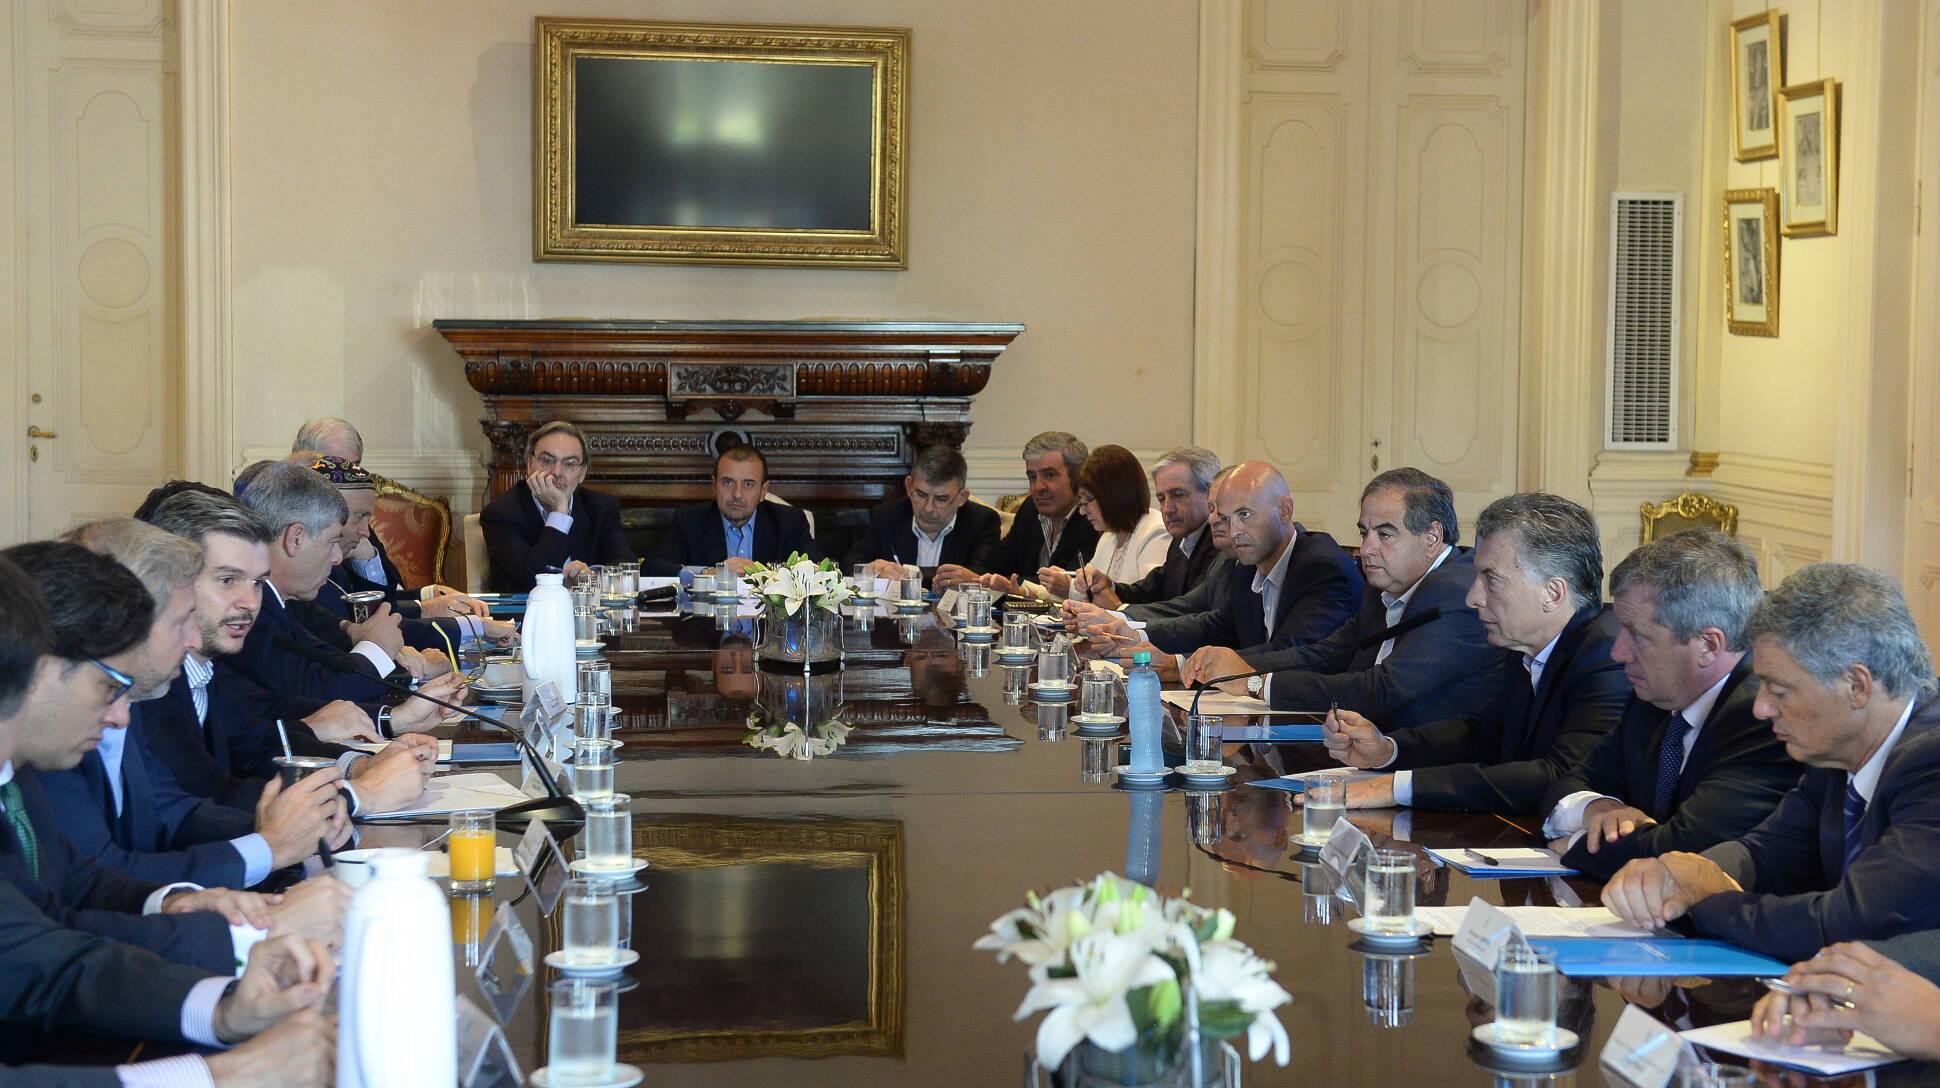 El presidente Macri encabezó una reunión de gabinete en la Casa Rosada